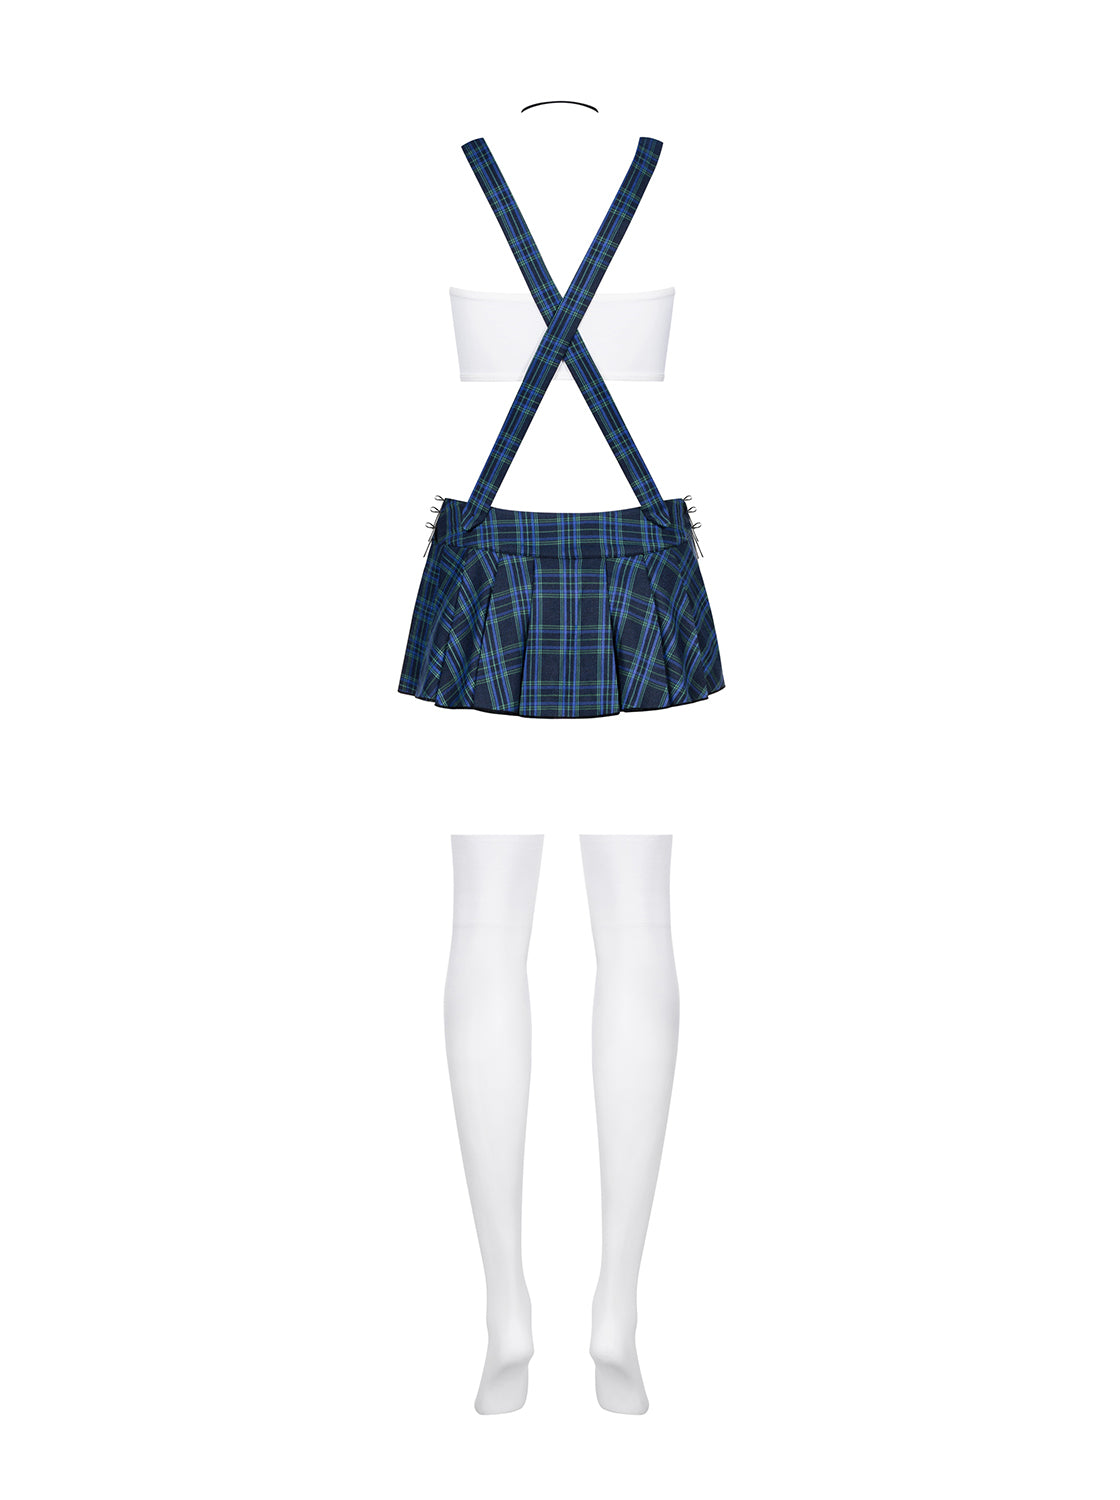 4 piece schoolgirl set with top and miniskirt